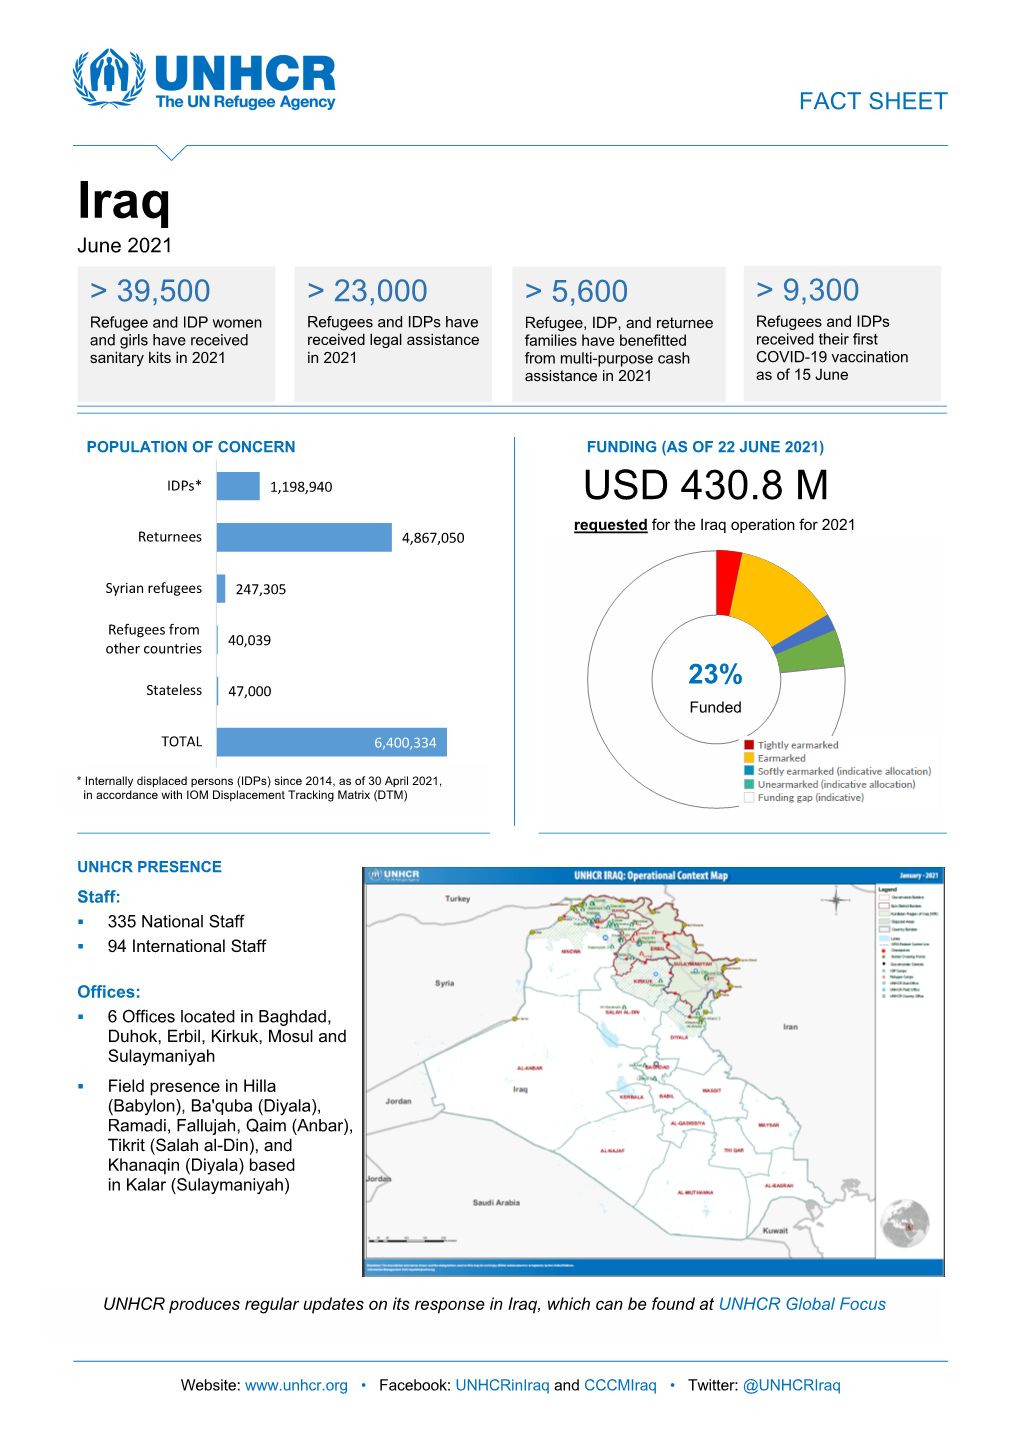 UNHCR Iraq Fact Sheet